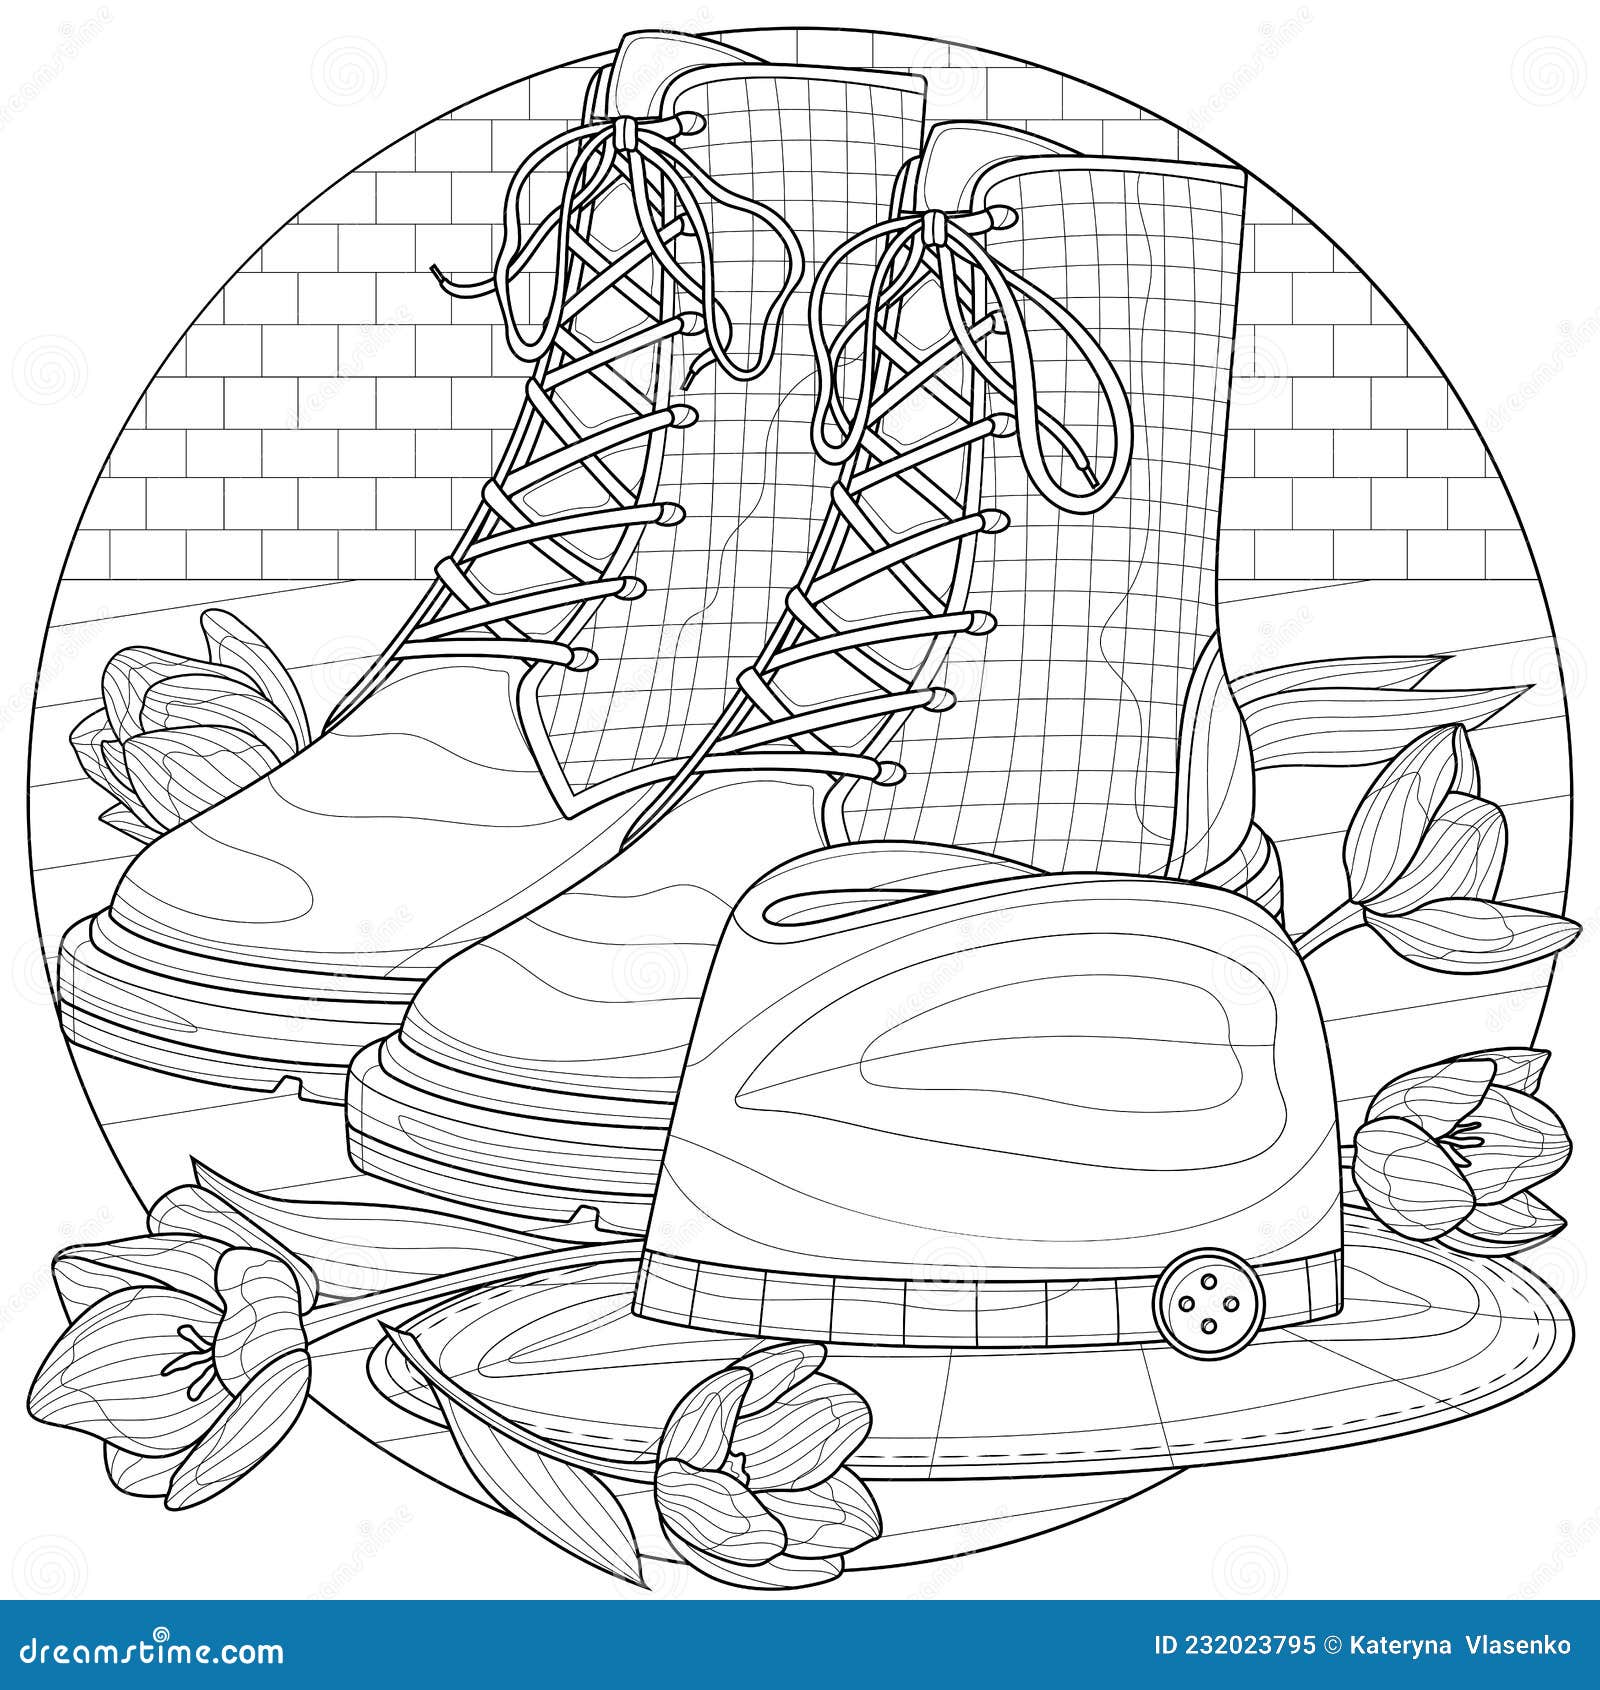 Desenho de lótus livro de colorir anti-stress para crianças e adultos